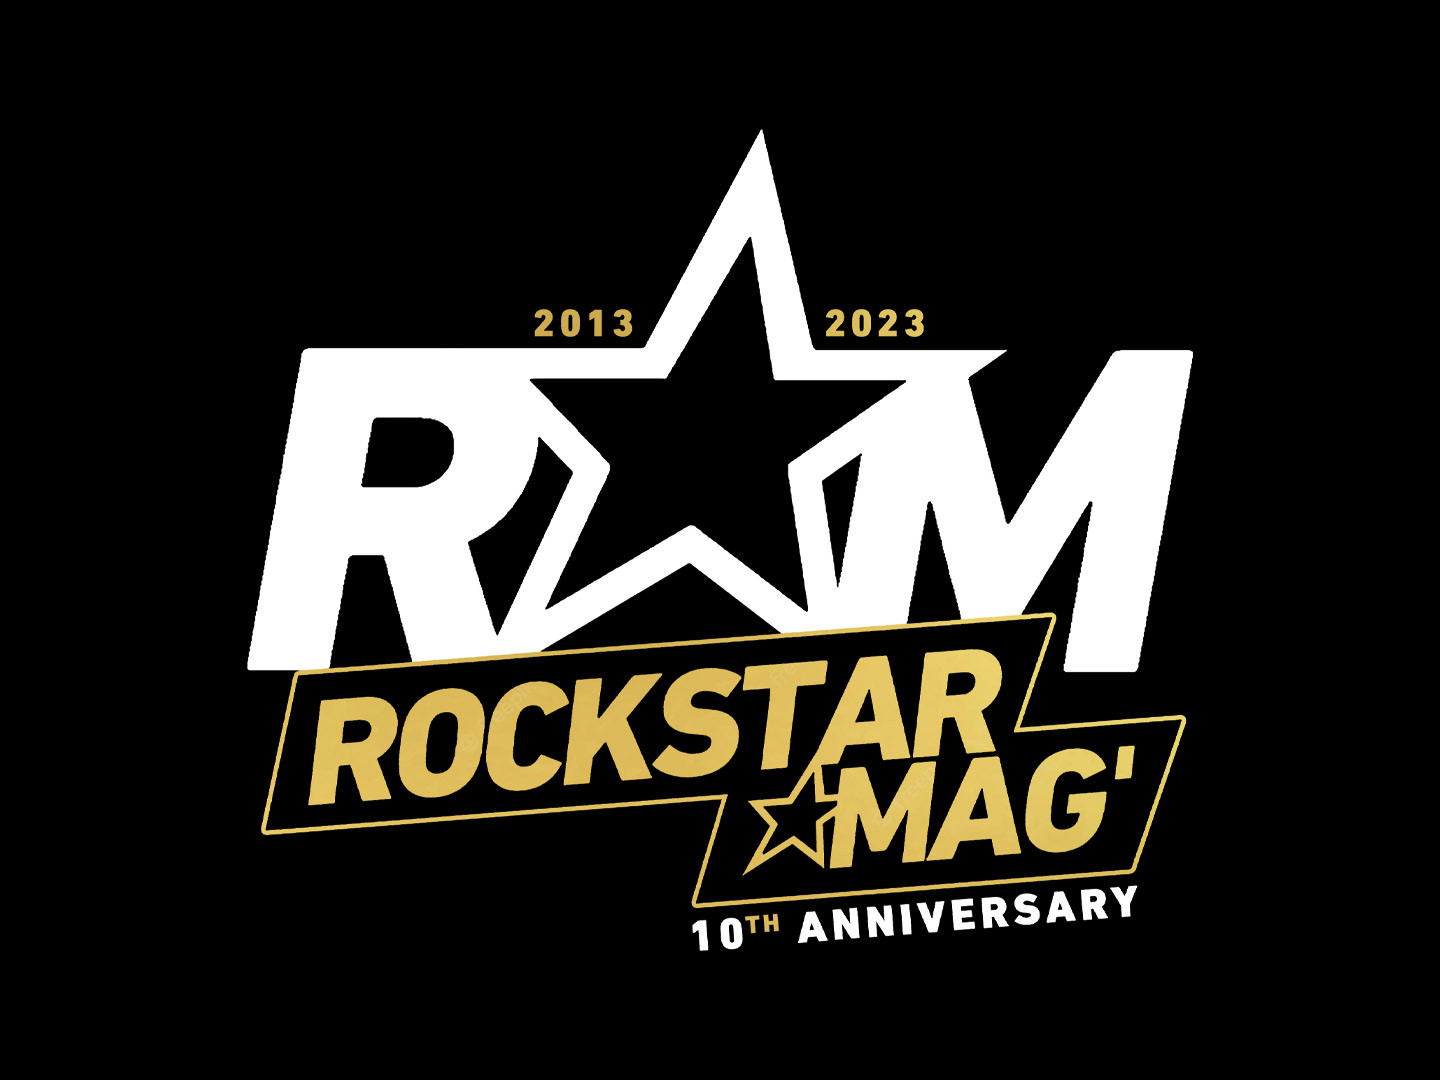 Rockstar Mag' 10 ans